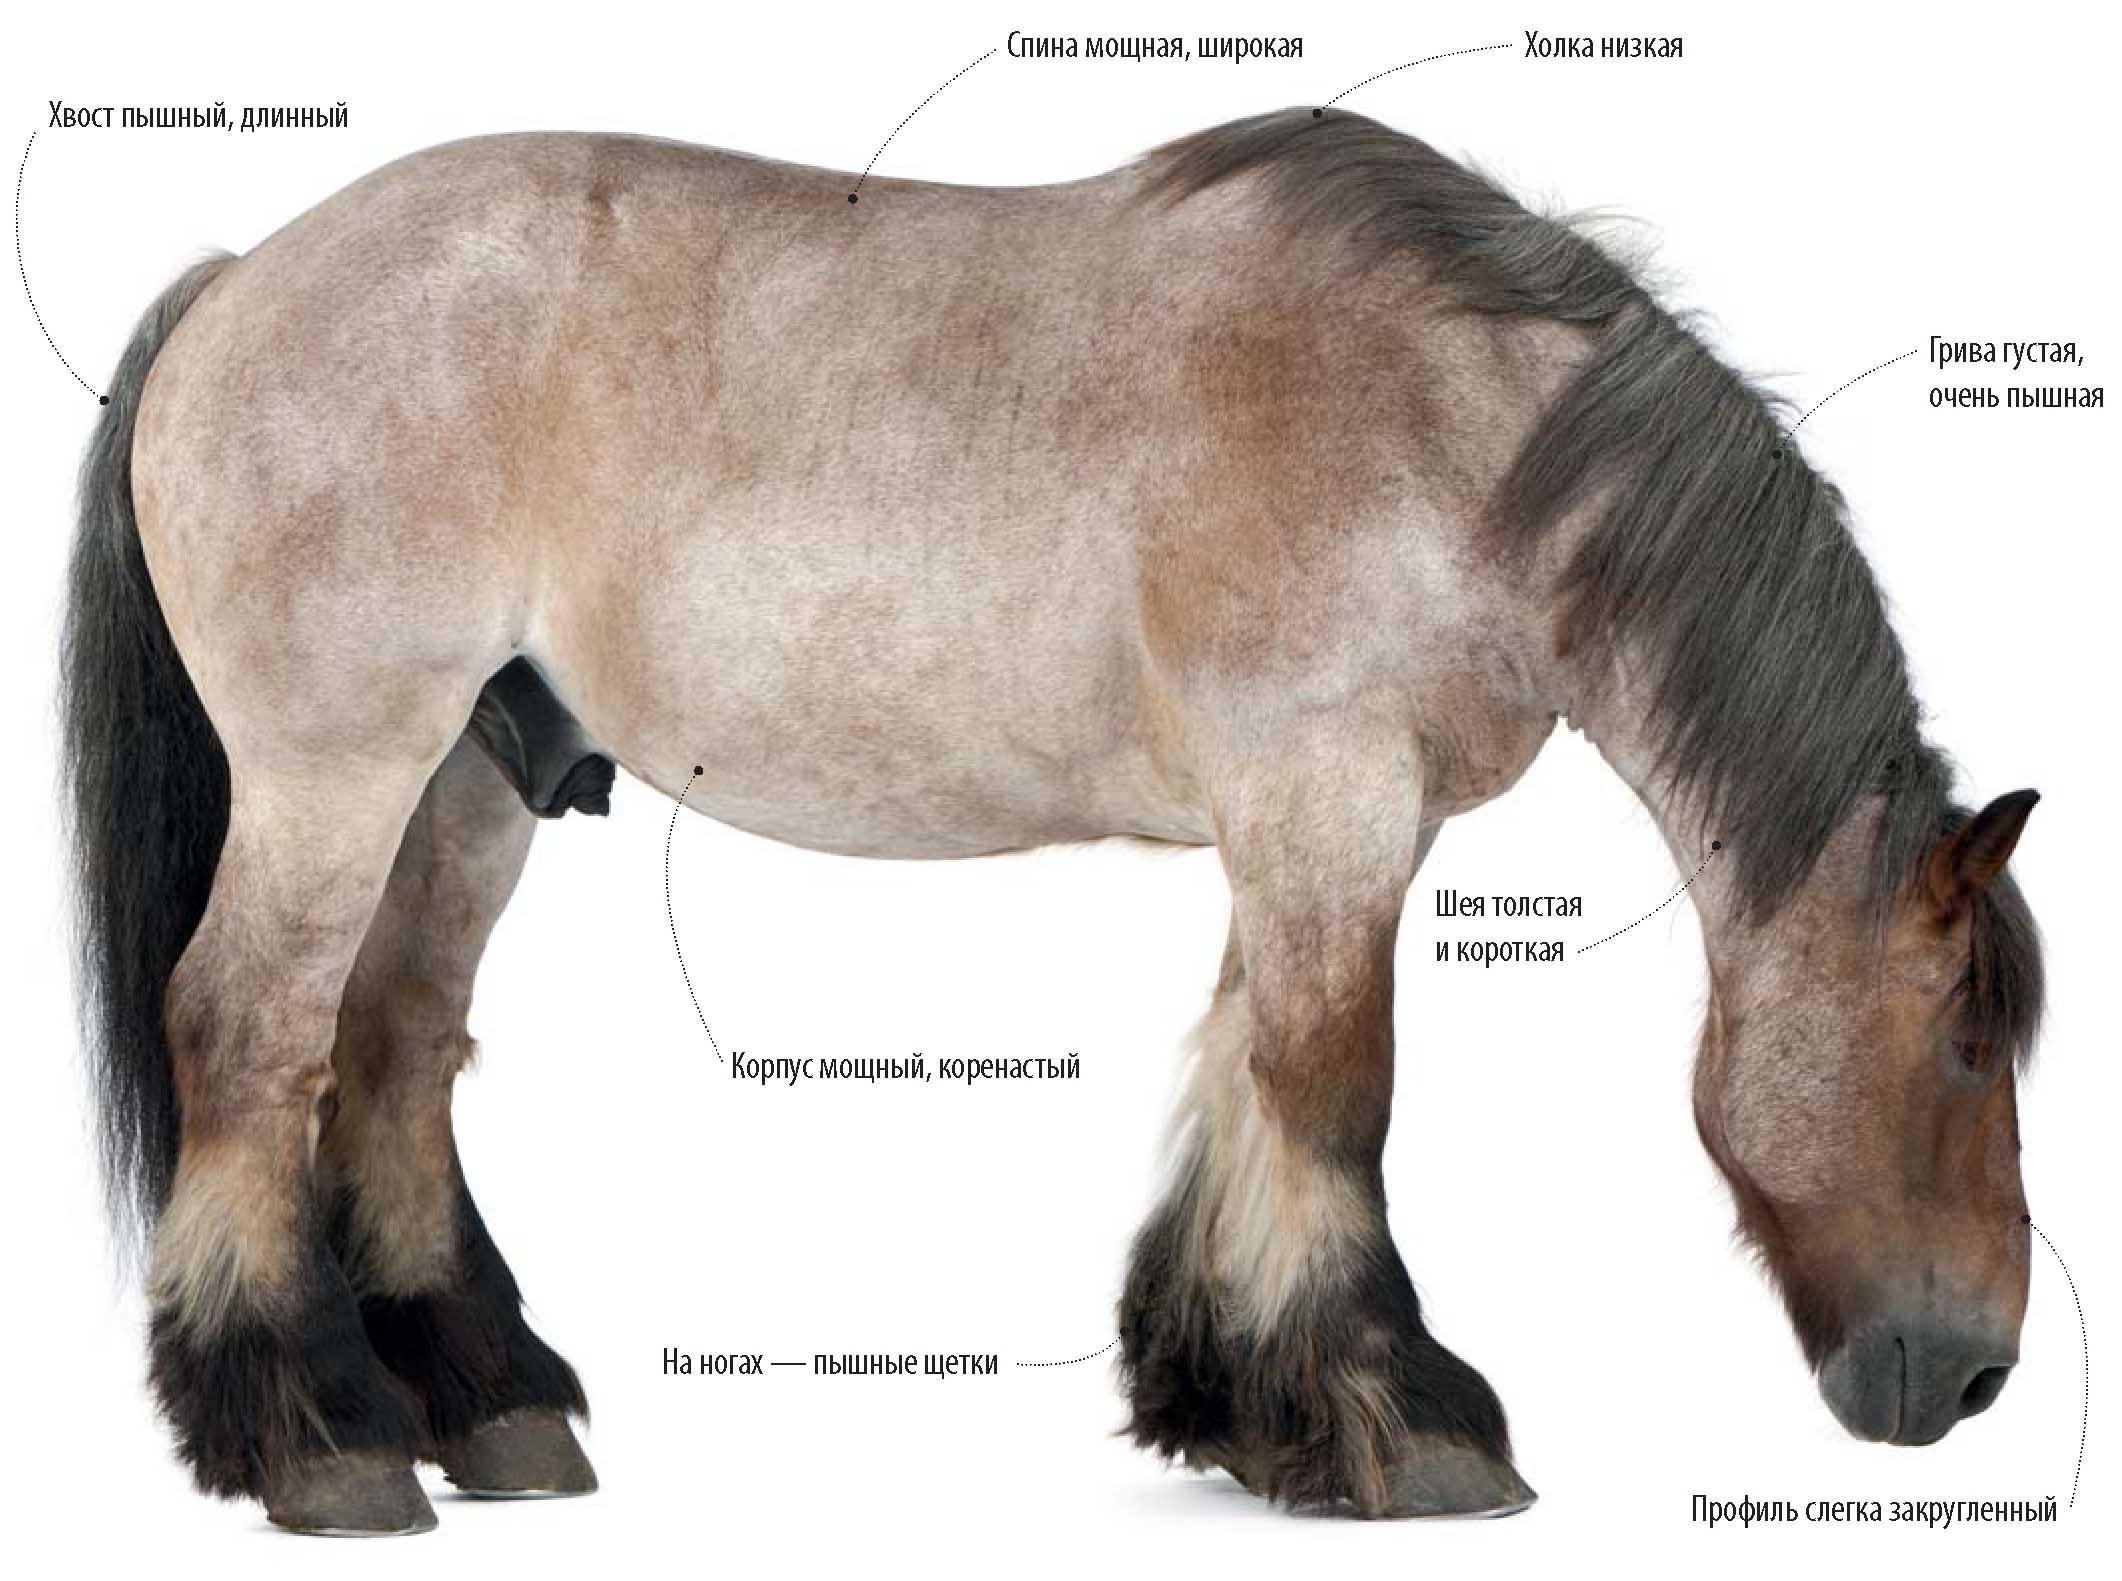 Бельгийская ломовая лошадь, или брабансон.